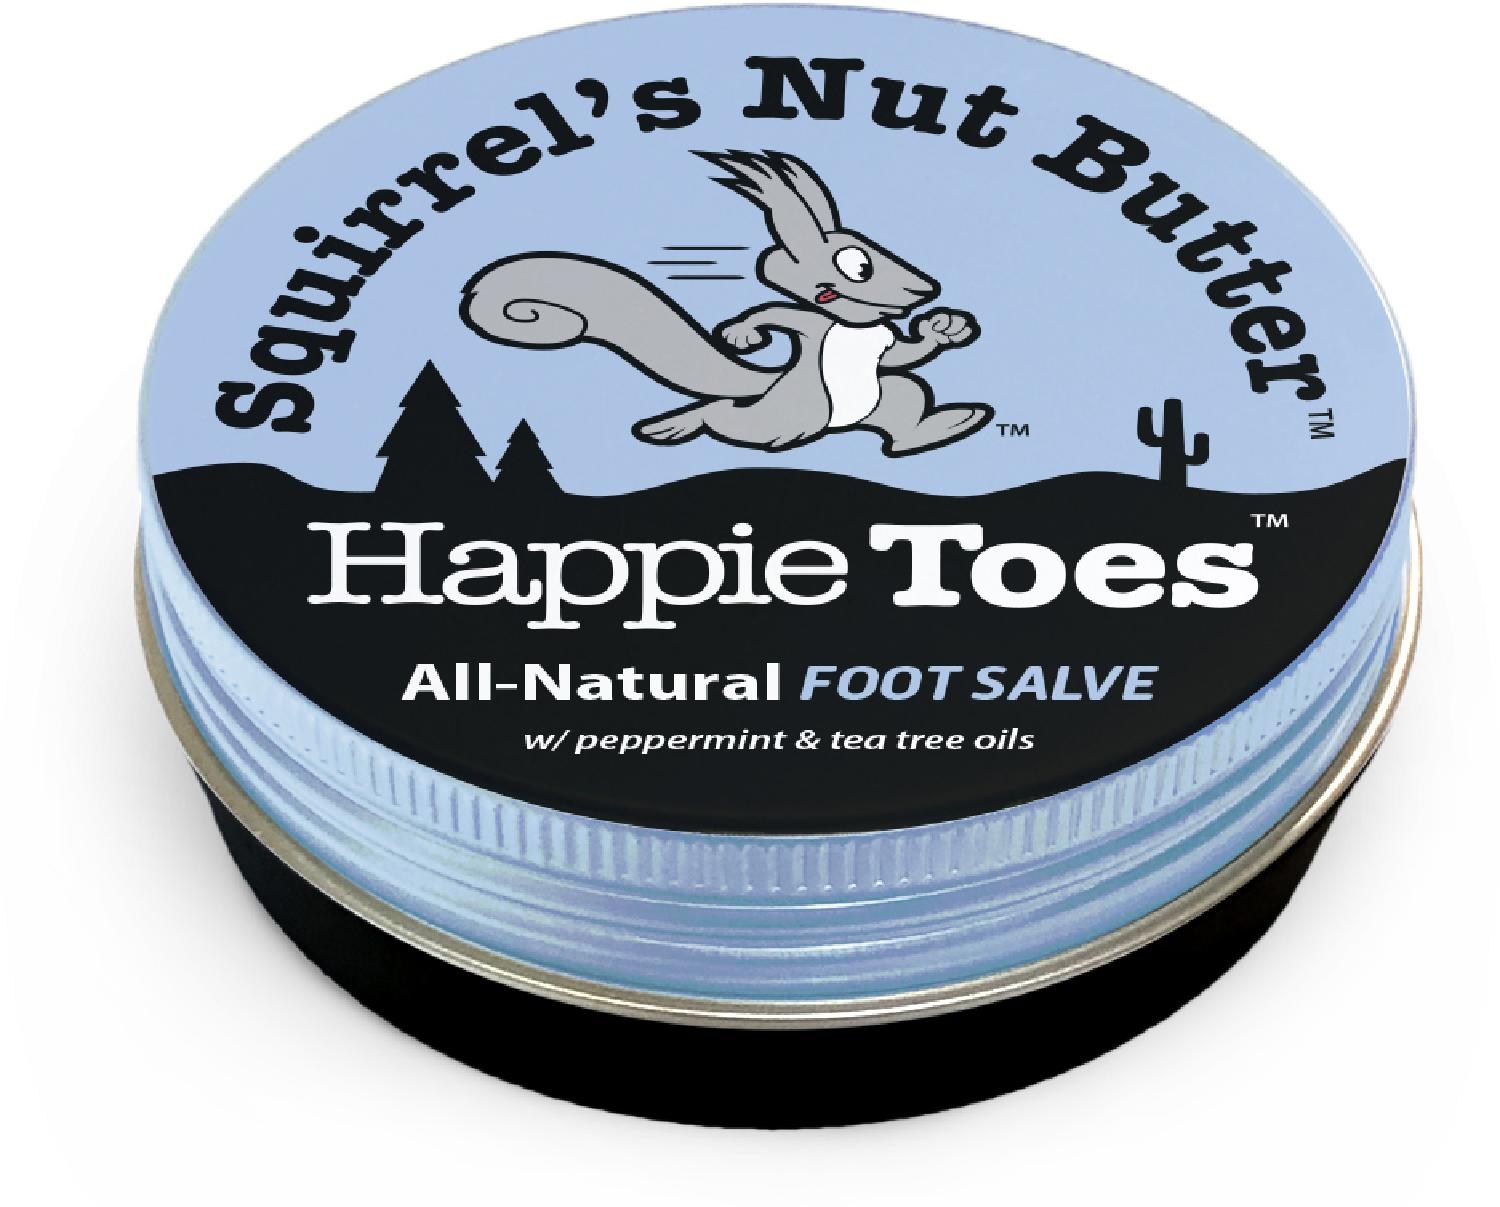 Банка мази Happy Toes - 2,0 унции. Squirrels Nut Butter цена и фото